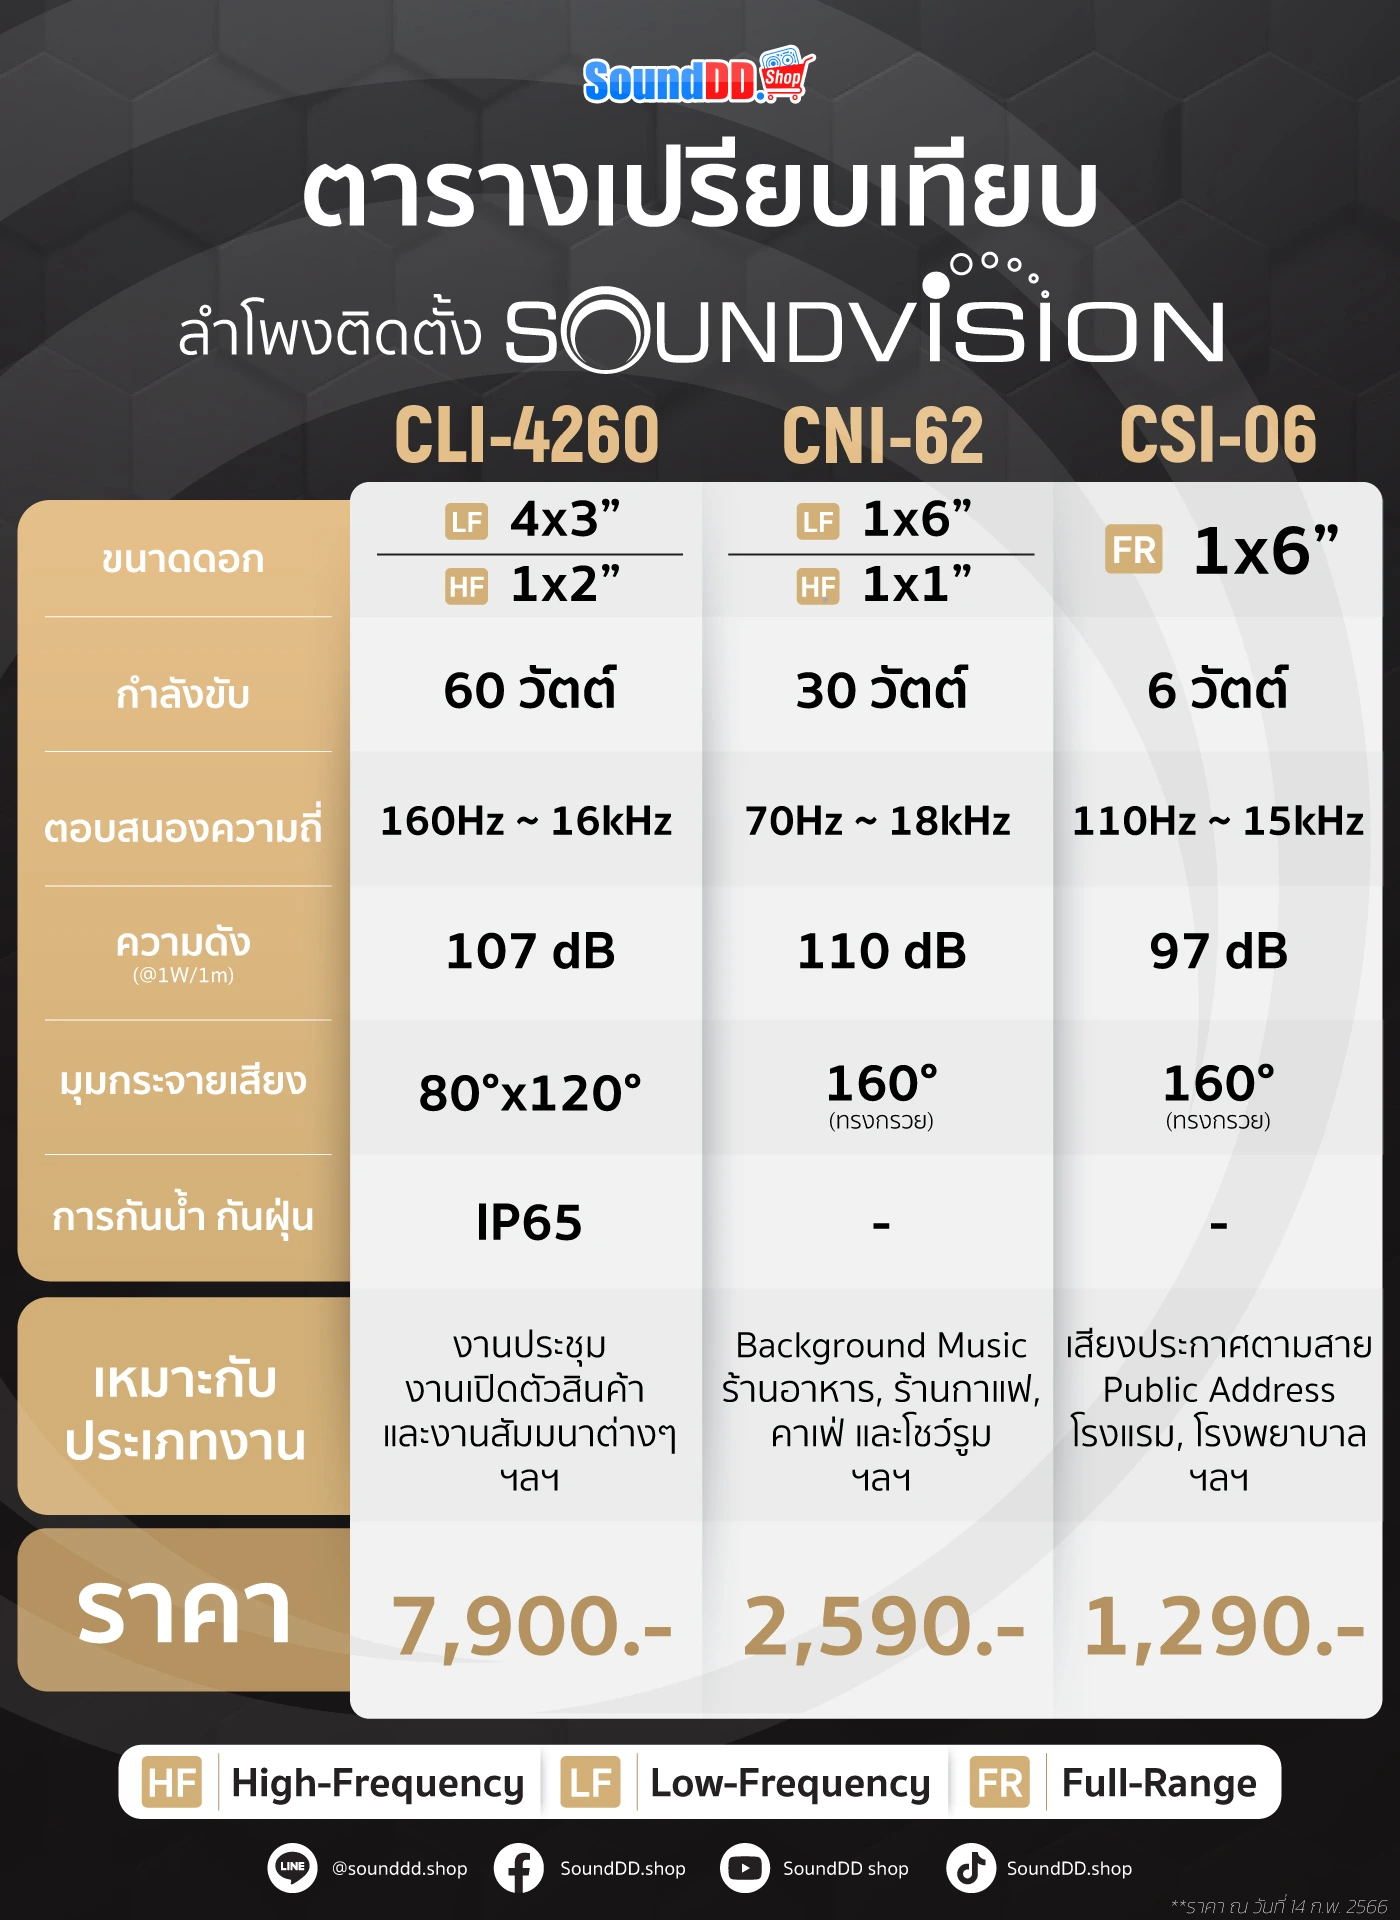 ตารางสรุปเปรียบเทียบลำโพงติดตั้ง Soundvision